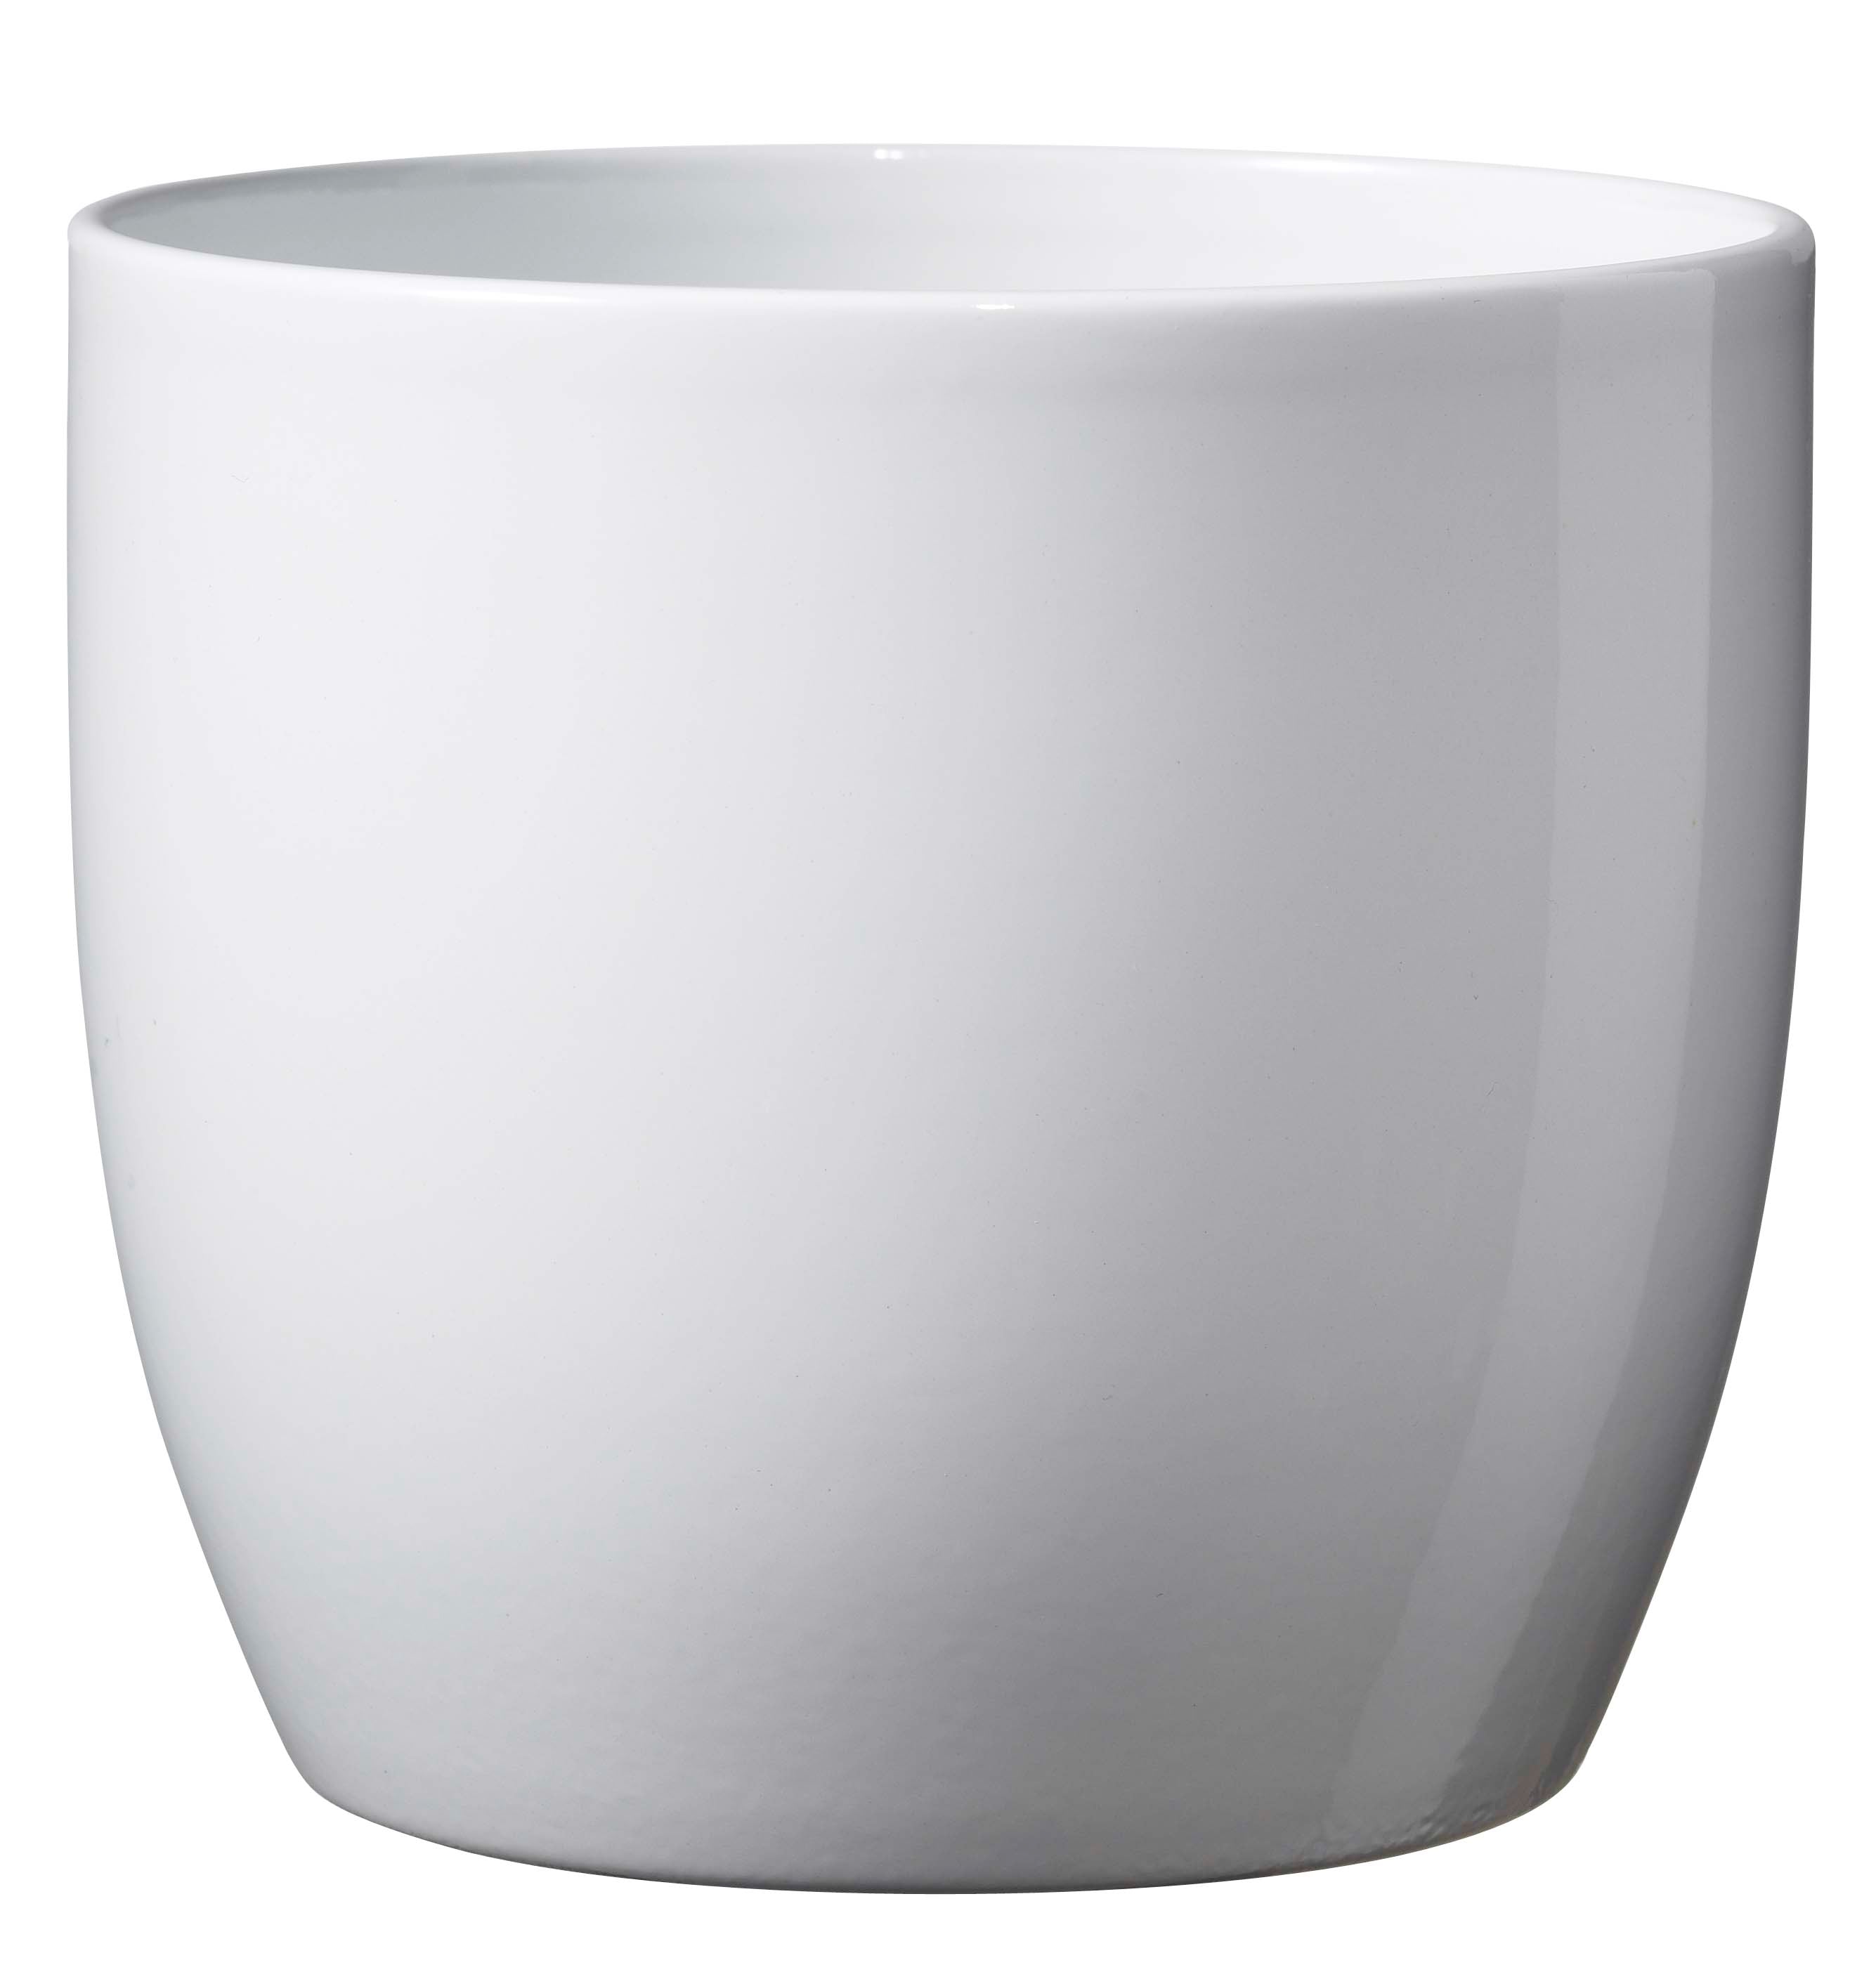 Soendgen Keramik - Basel full color skjuler Ø9,5 cm - Skinnende hvid - Ø9,5 H8 cm